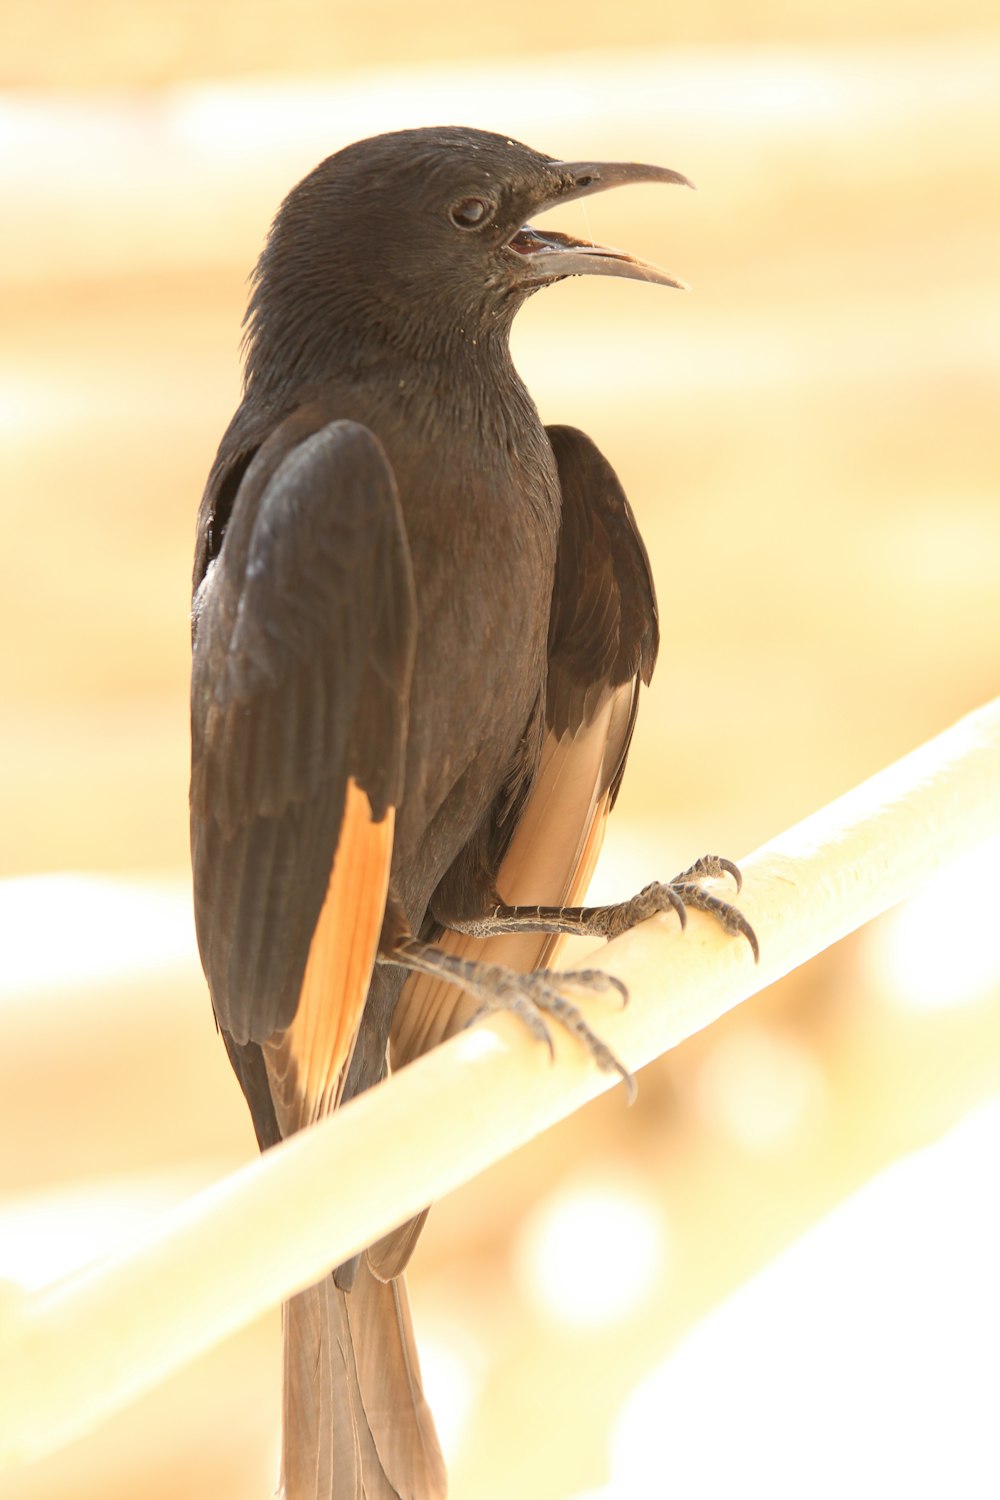 black bird on brown wooden stick